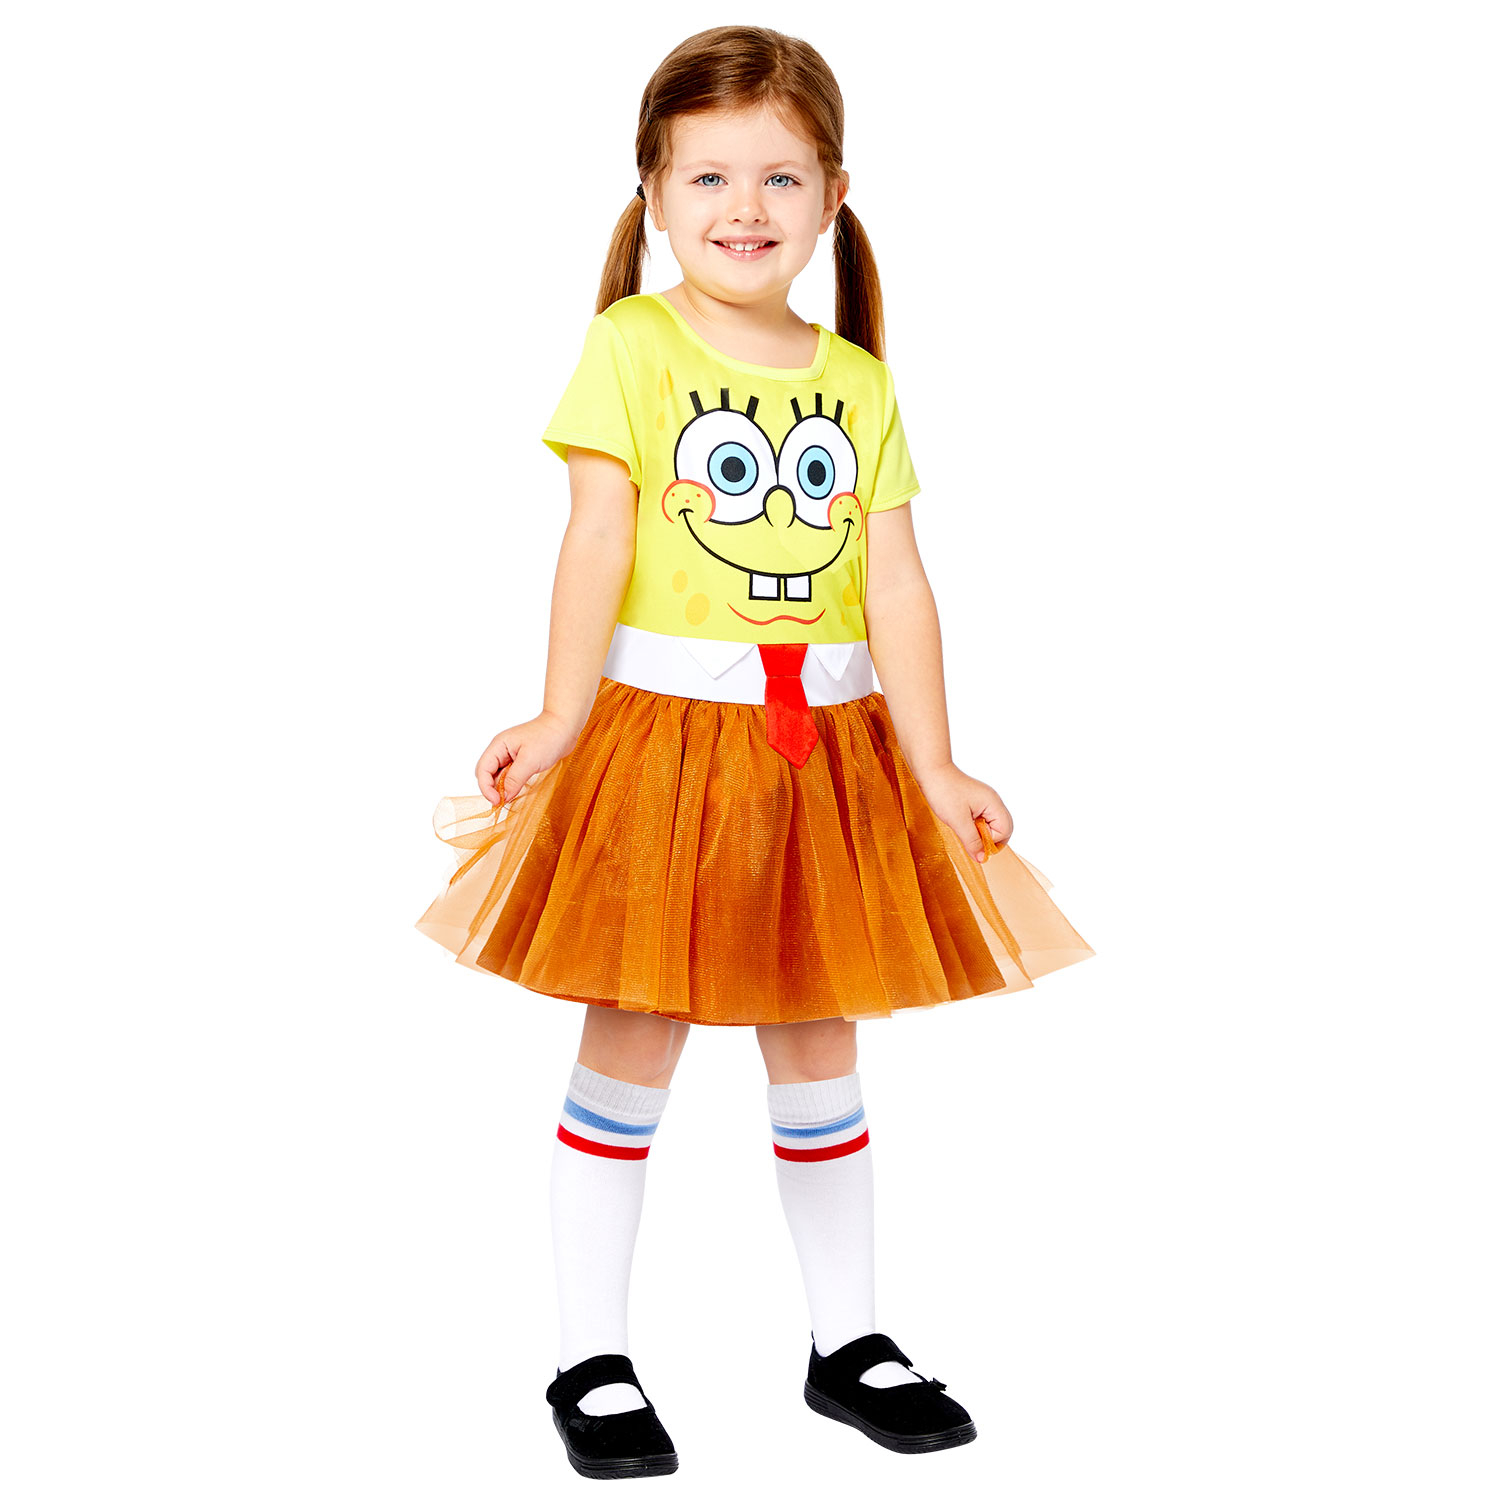 Amscan Detský kostým - Spongebob dievčenský Veľkosť - deti: S